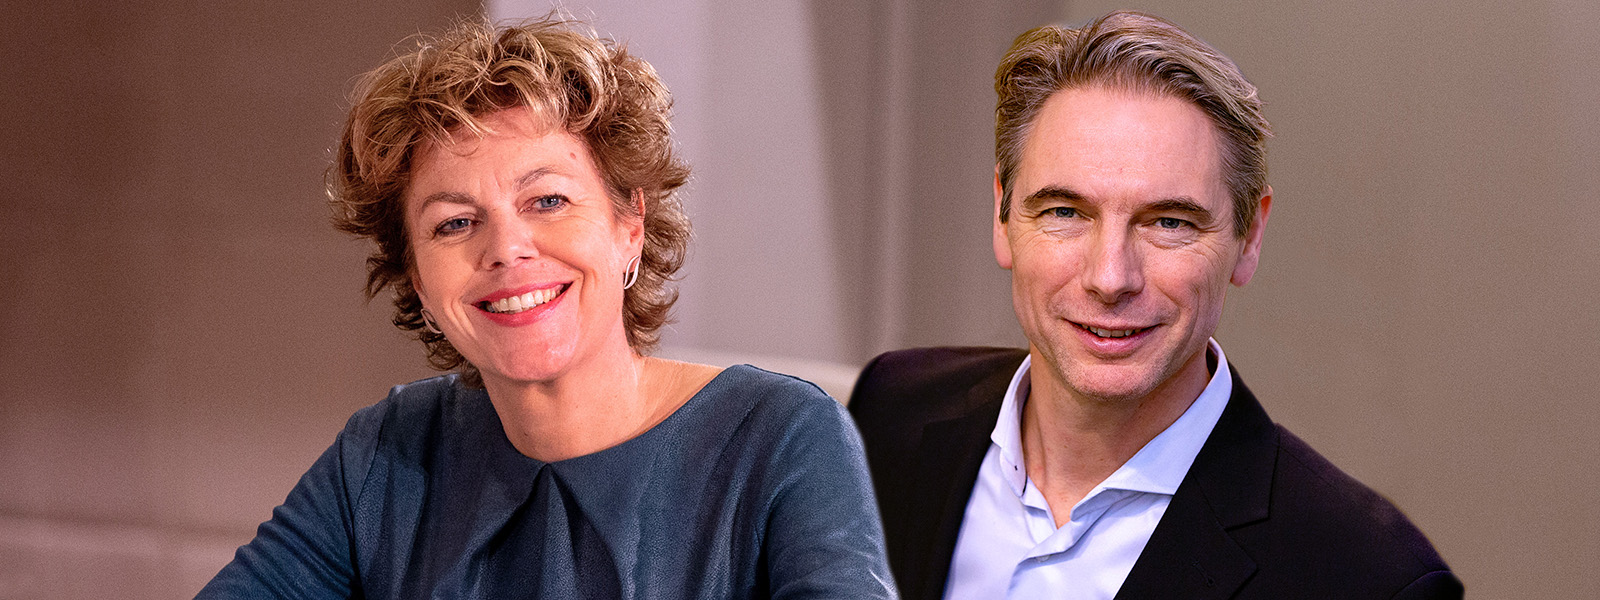 De voorzitters van de StvdA: Ingrid Thijssen (VNO-NCW) en Tuur Elzinga (FNV)